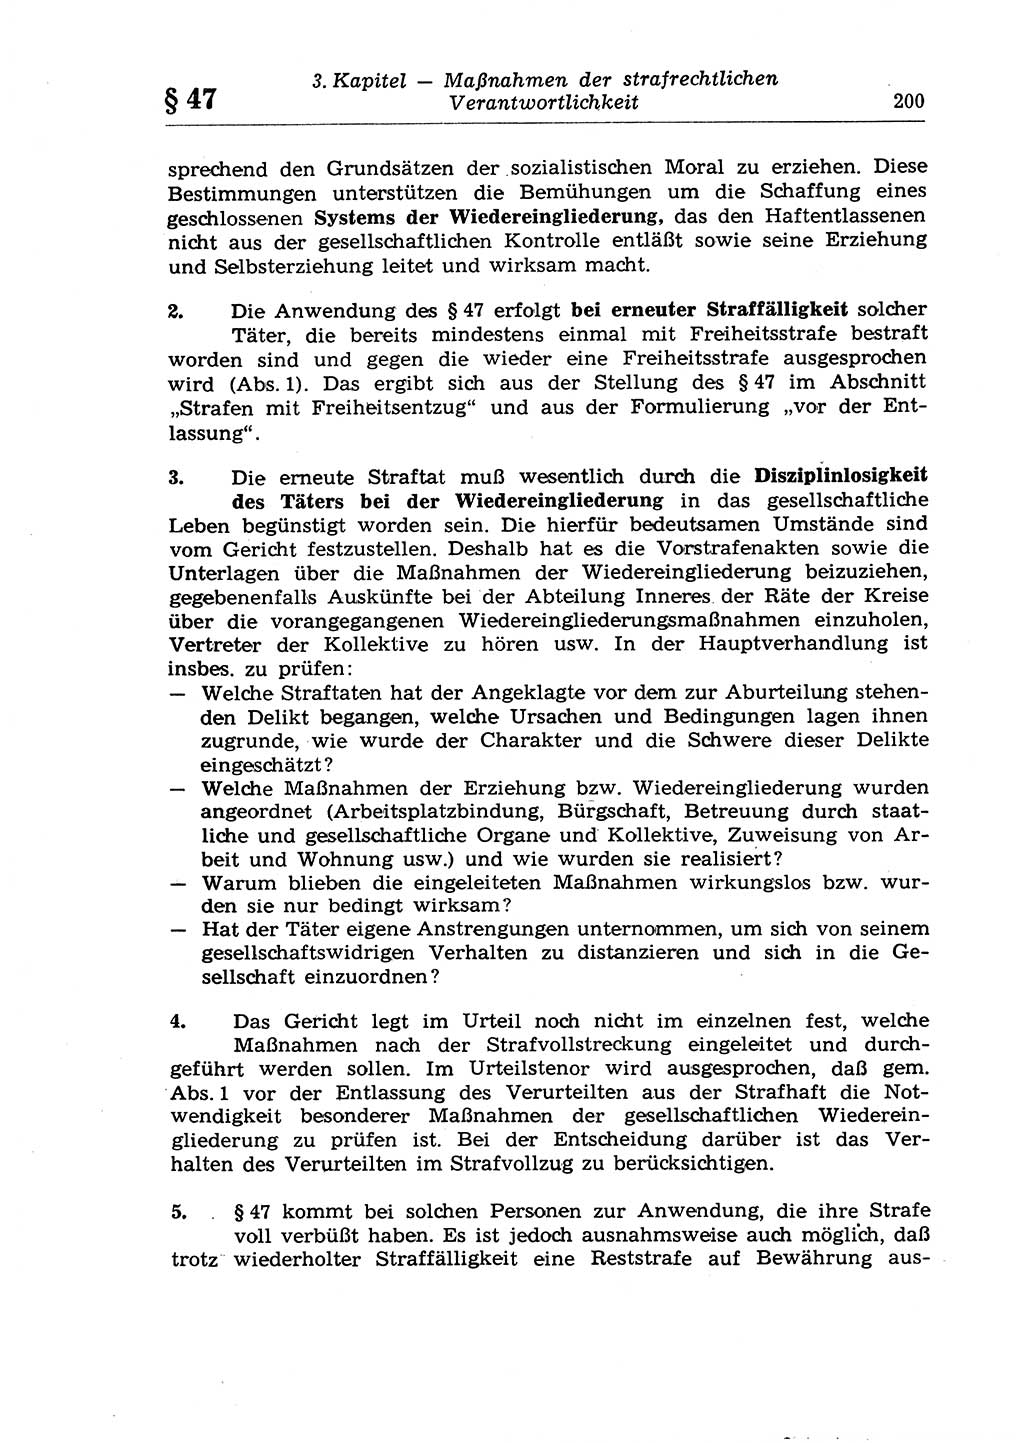 Strafrecht der Deutschen Demokratischen Republik (DDR), Lehrkommentar zum Strafgesetzbuch (StGB), Allgemeiner Teil 1970, Seite 200 (Strafr. DDR Lehrkomm. StGB AT 1970, S. 200)